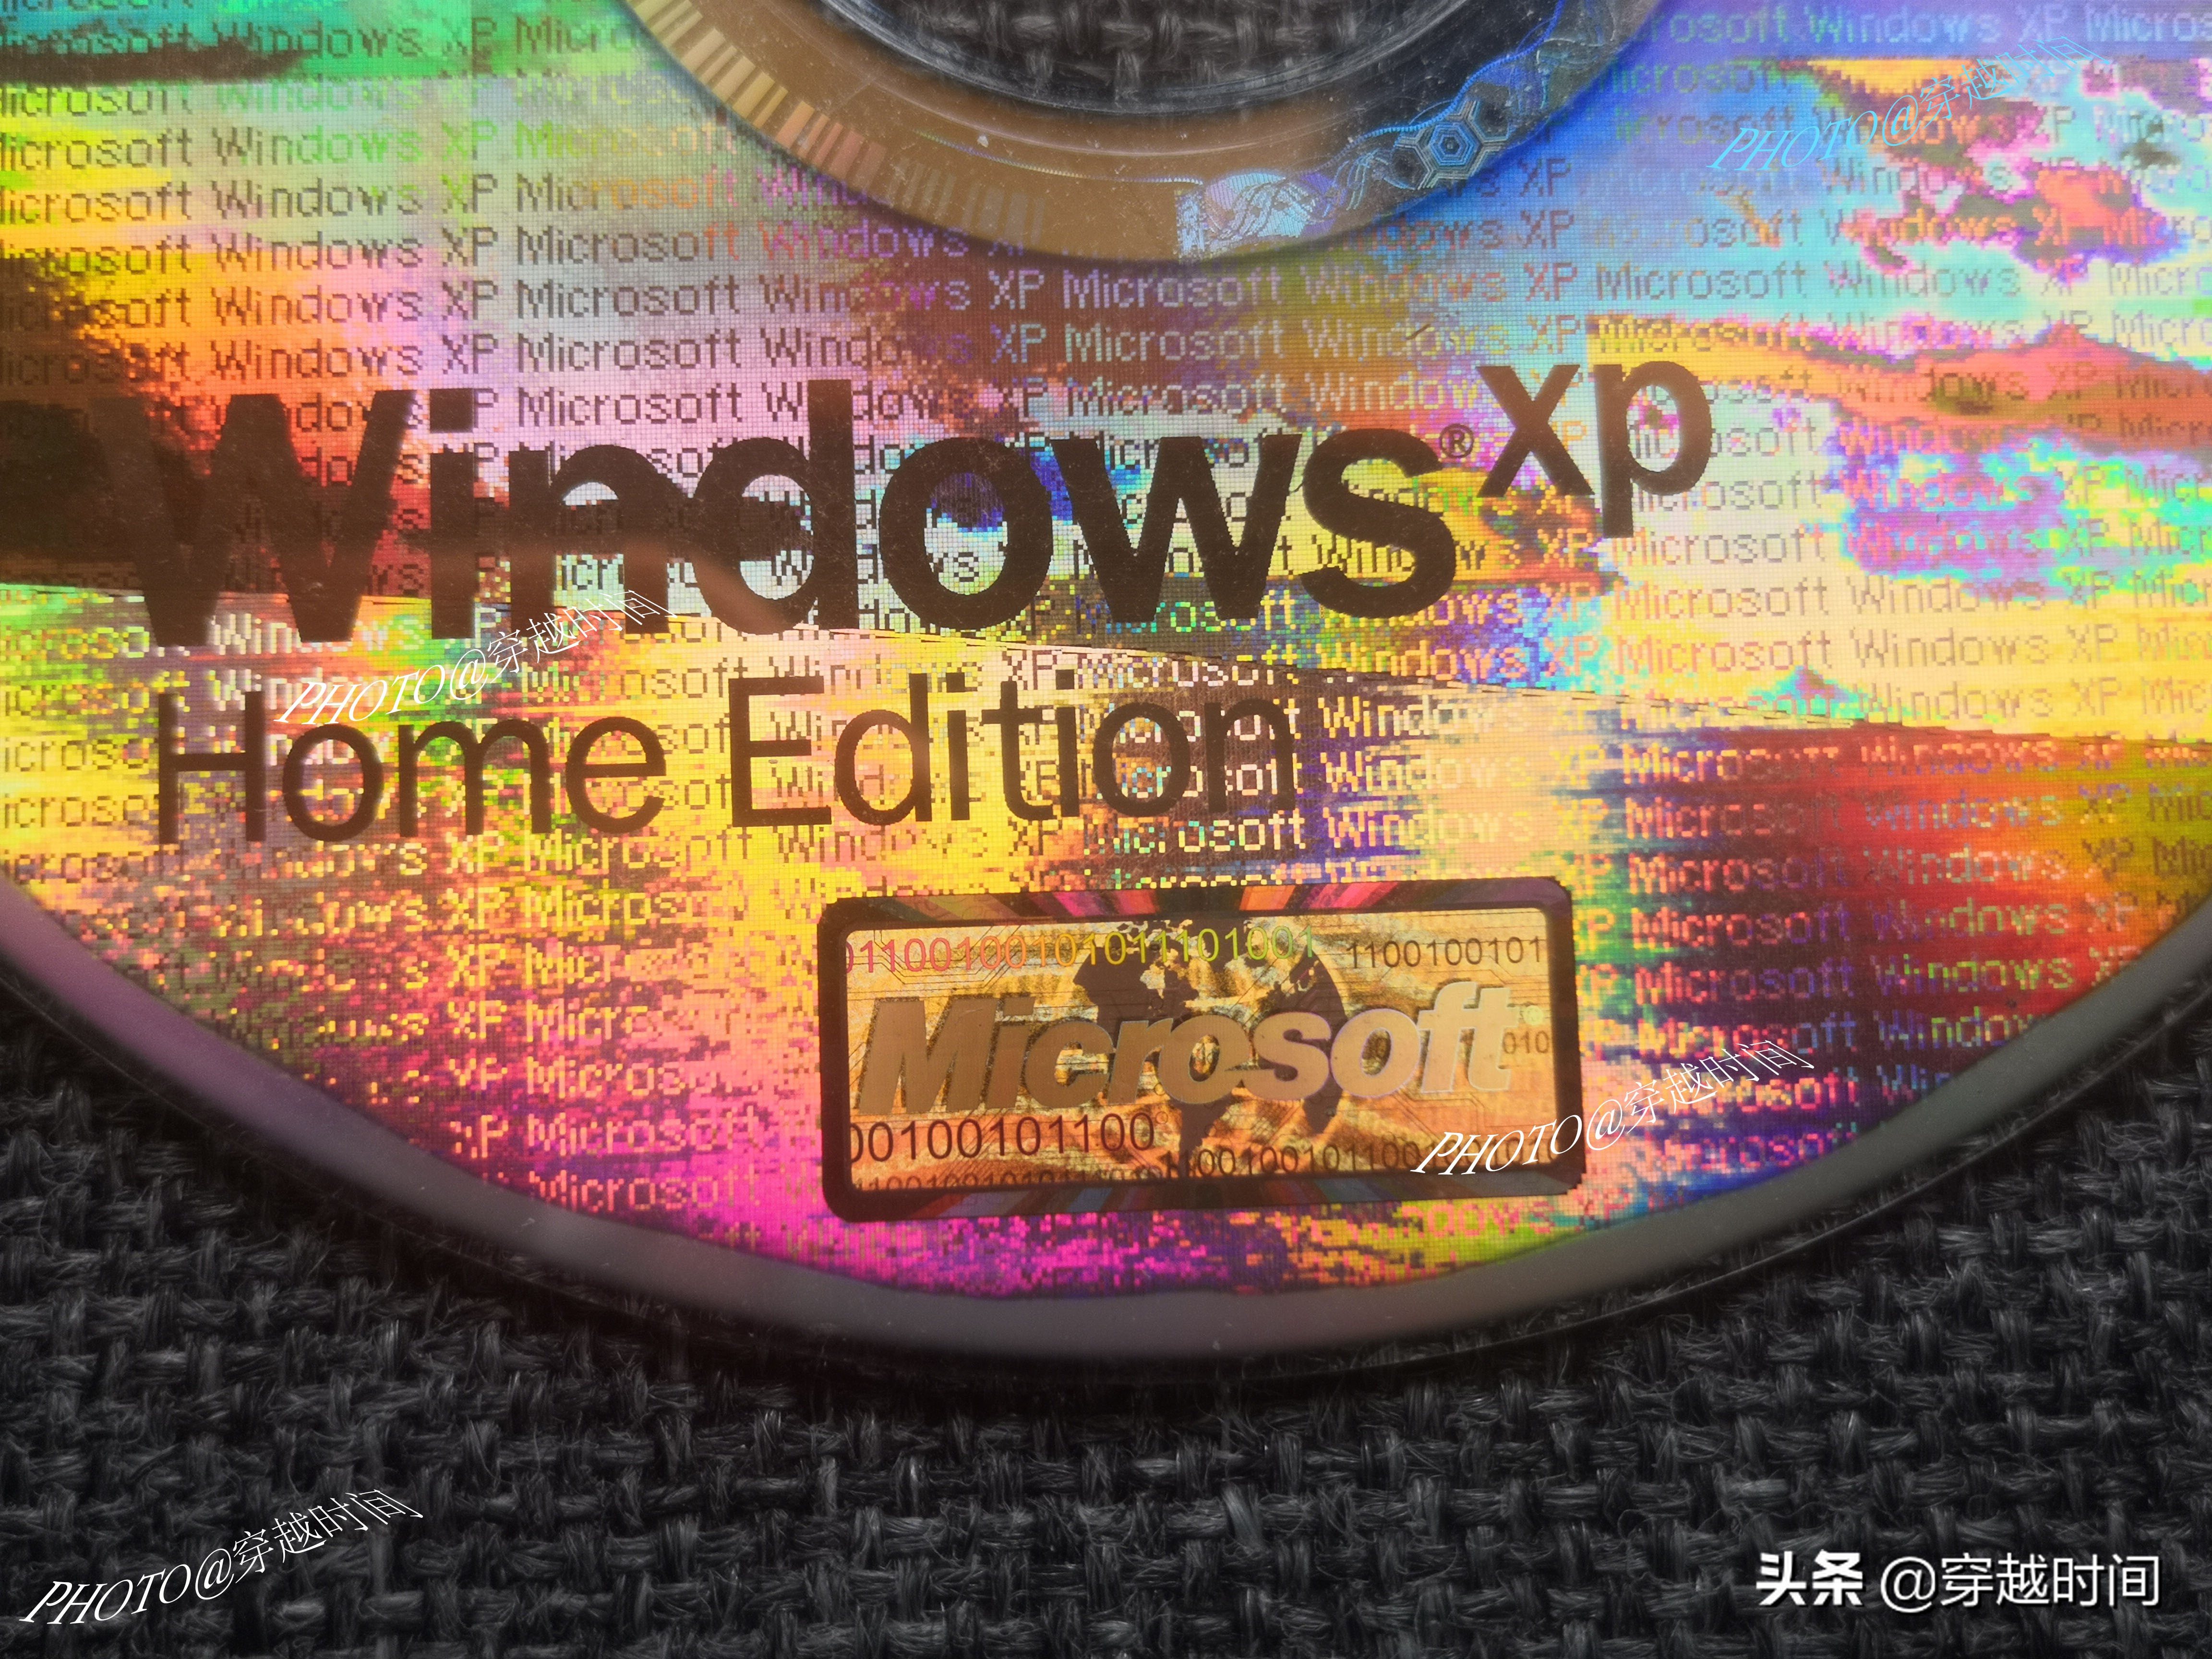 「百年光磁」全息防伪的 Windows XP 光盘啥样？缤纷绚丽 千变万化